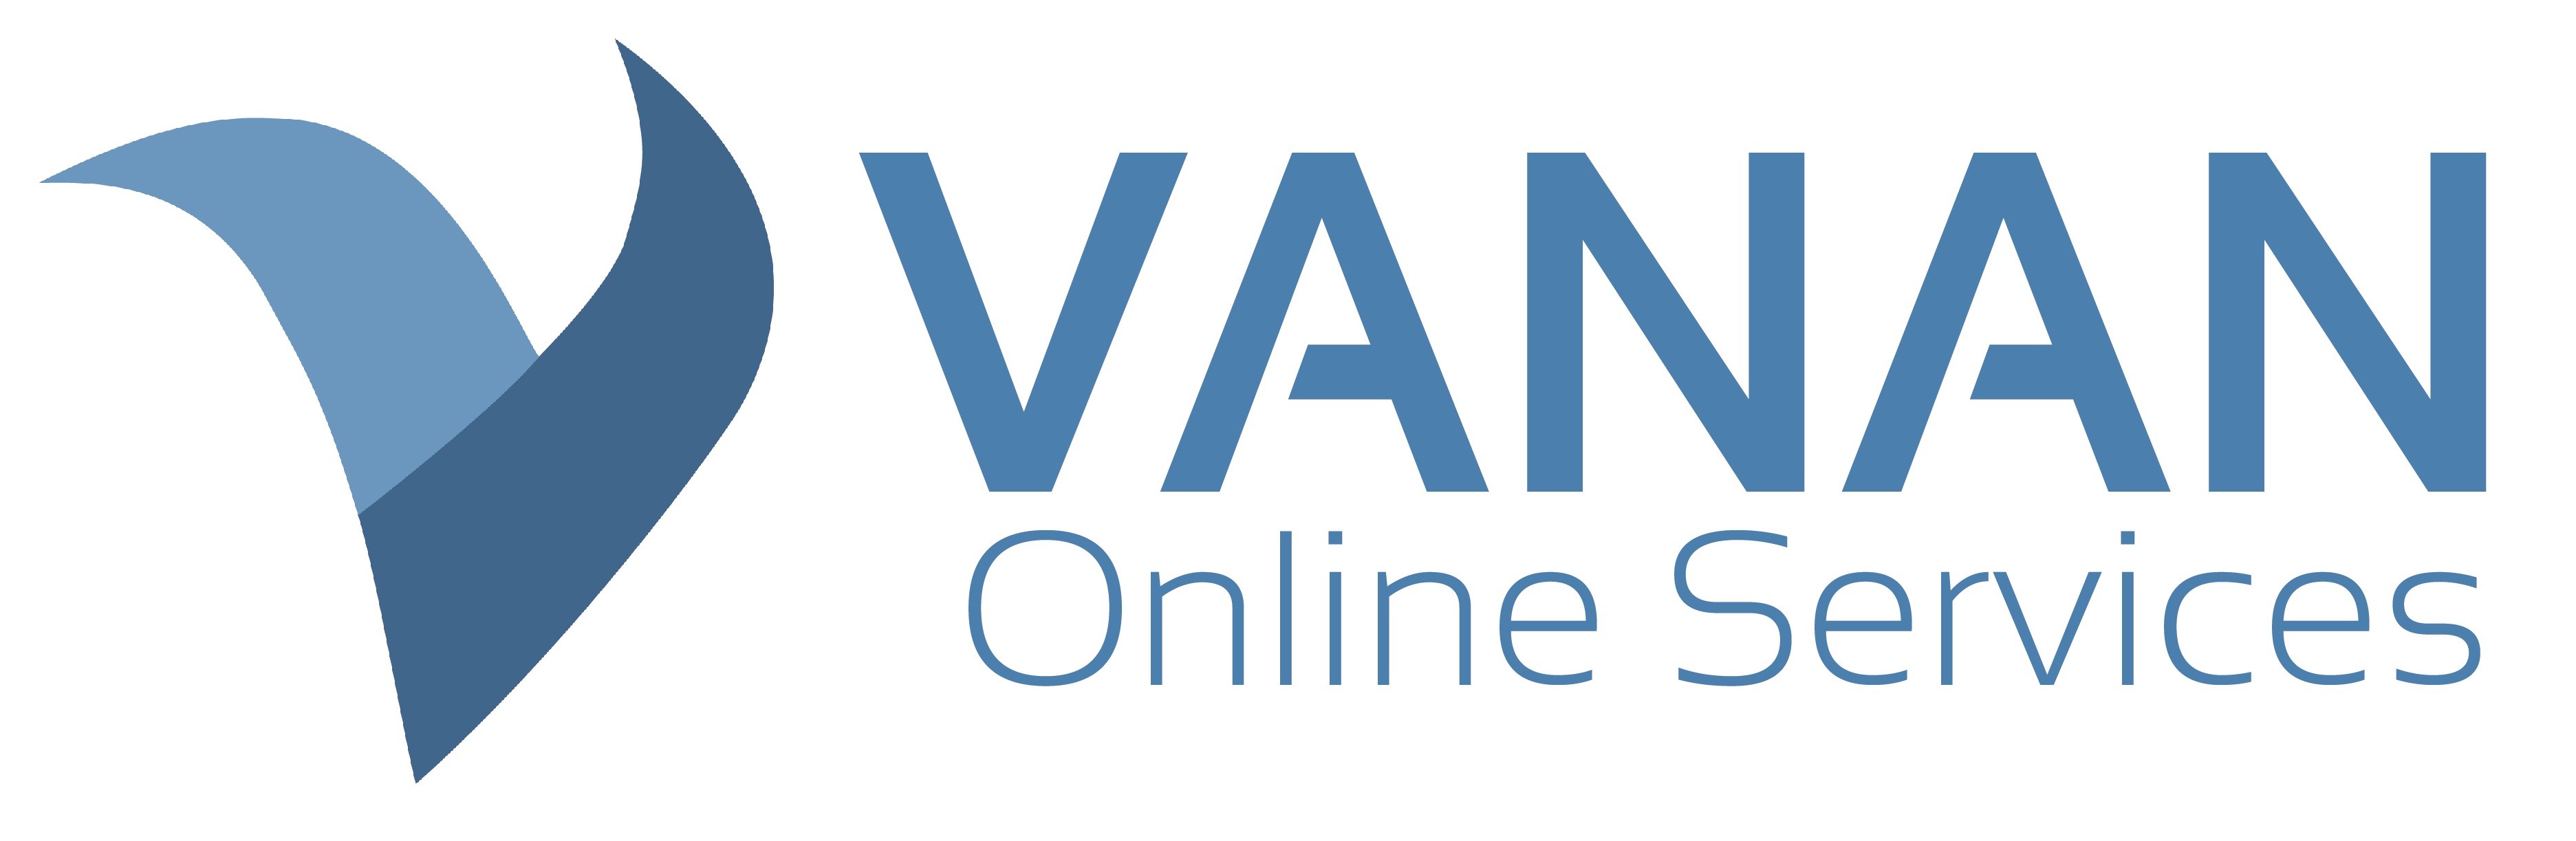 Vanan Services logo